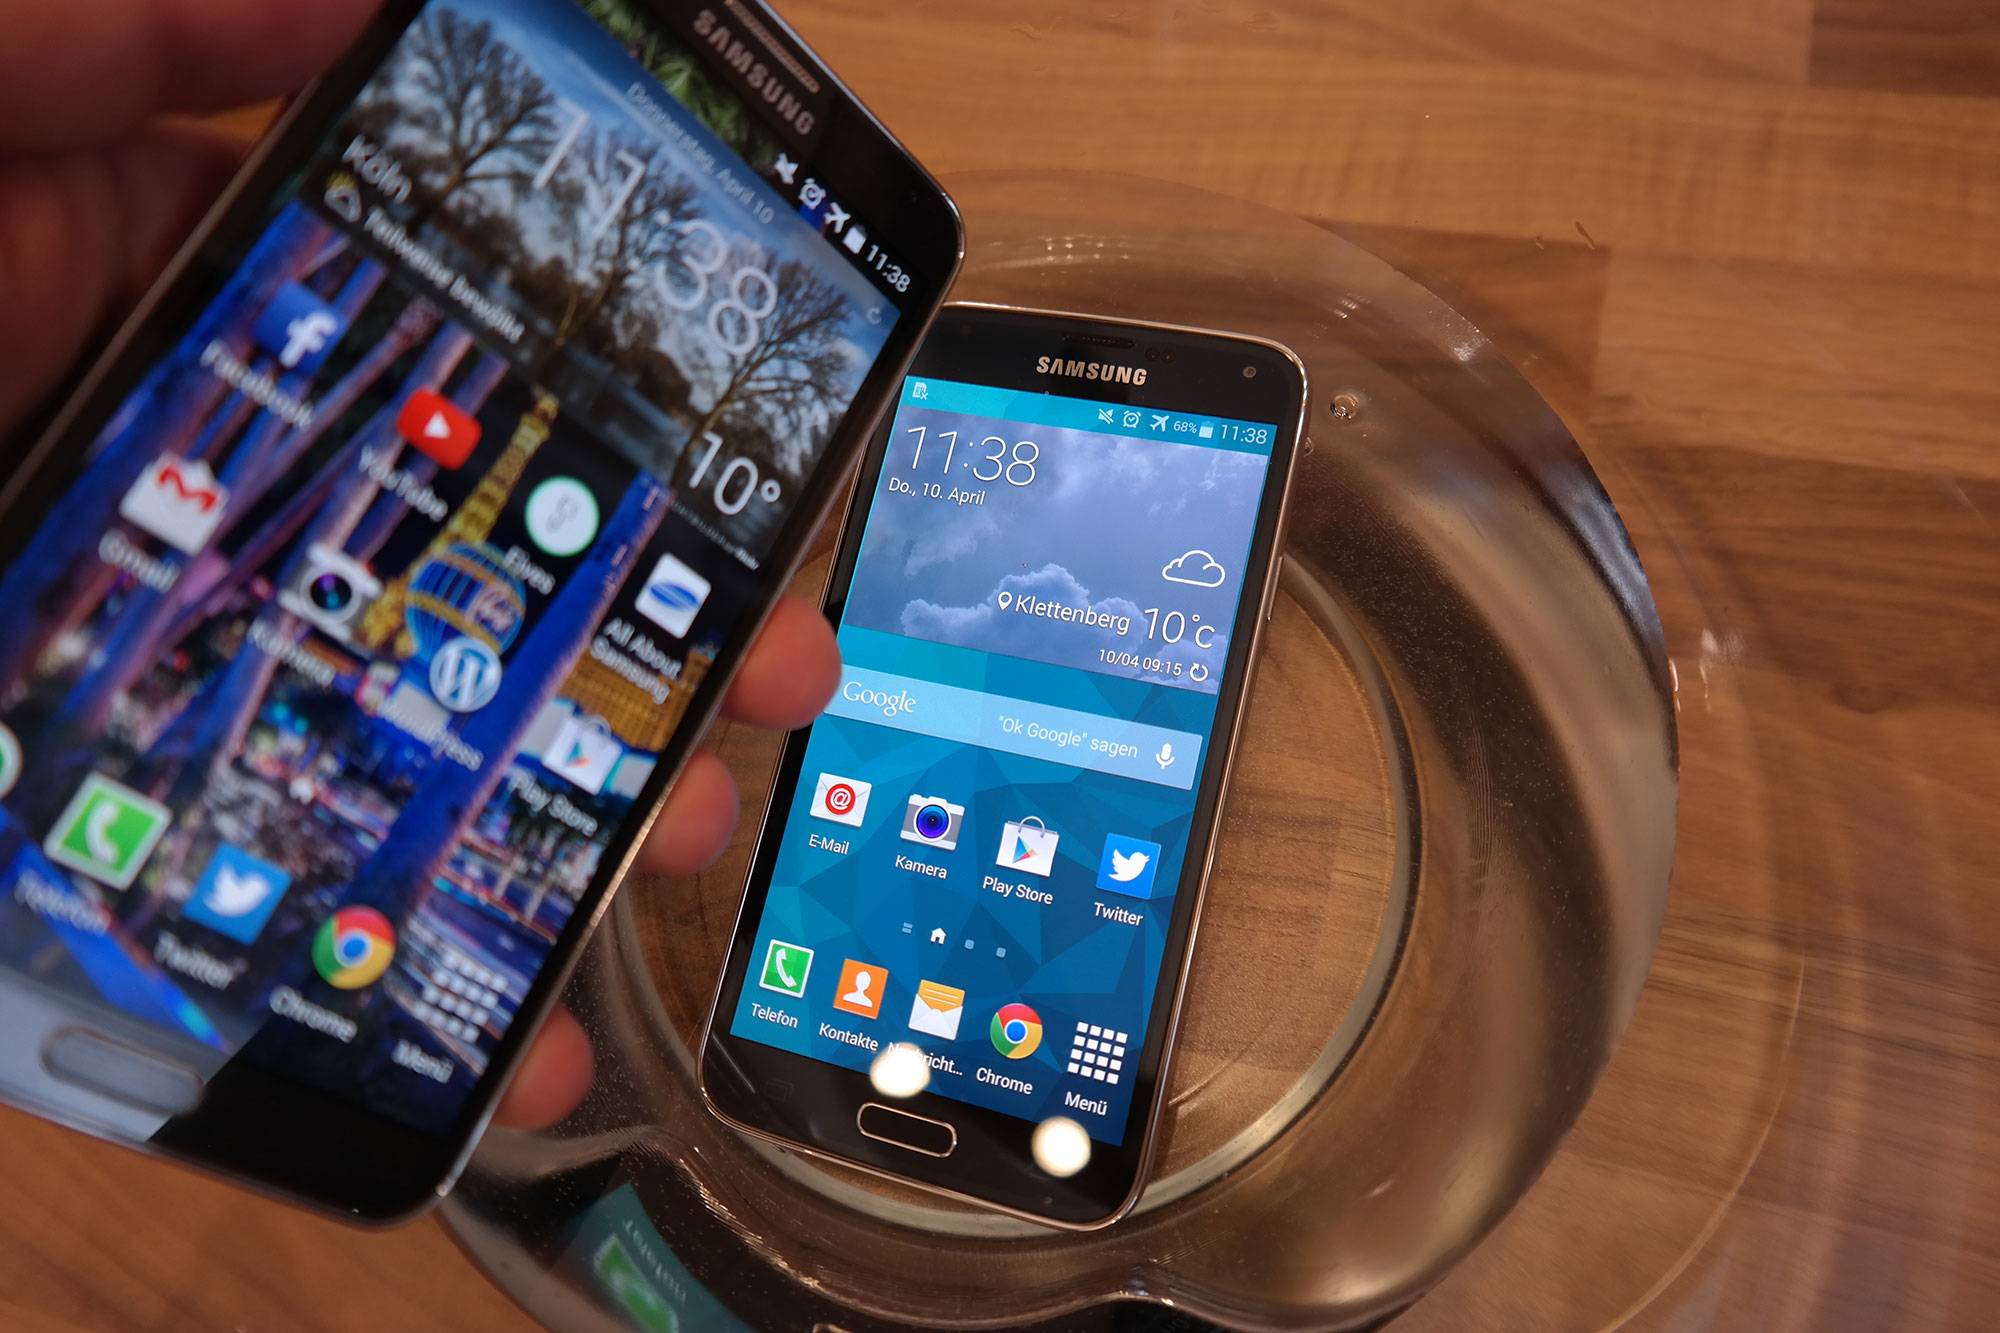 Samsung Galaxy S5 und Galaxy Note 3 im Vergleich - All About Samsung